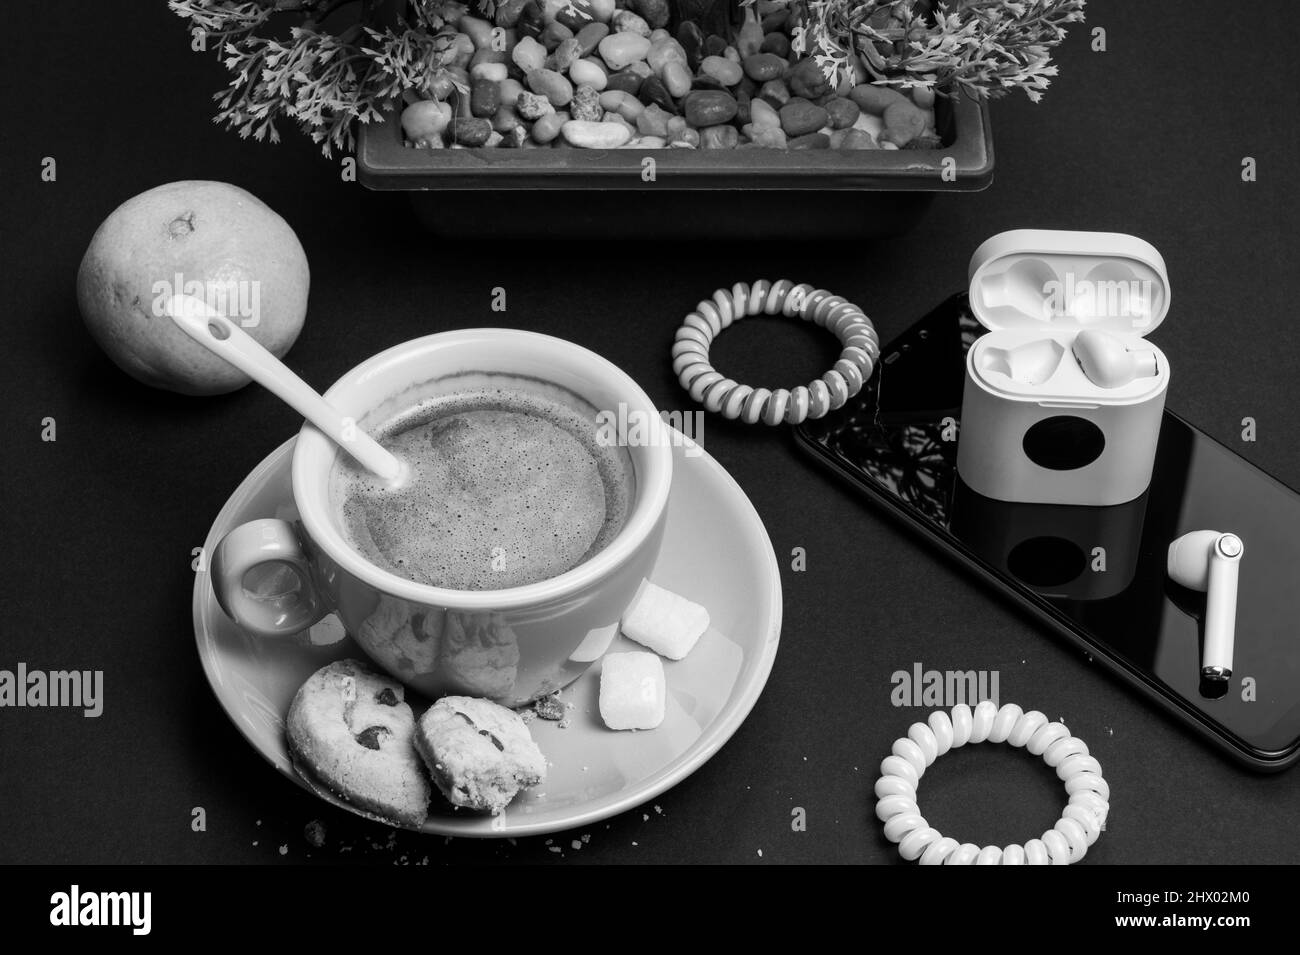 Pausa caffè durante la giornata di lavoro, persone creative, pubblicità business concept. Foto di alta qualità Foto Stock